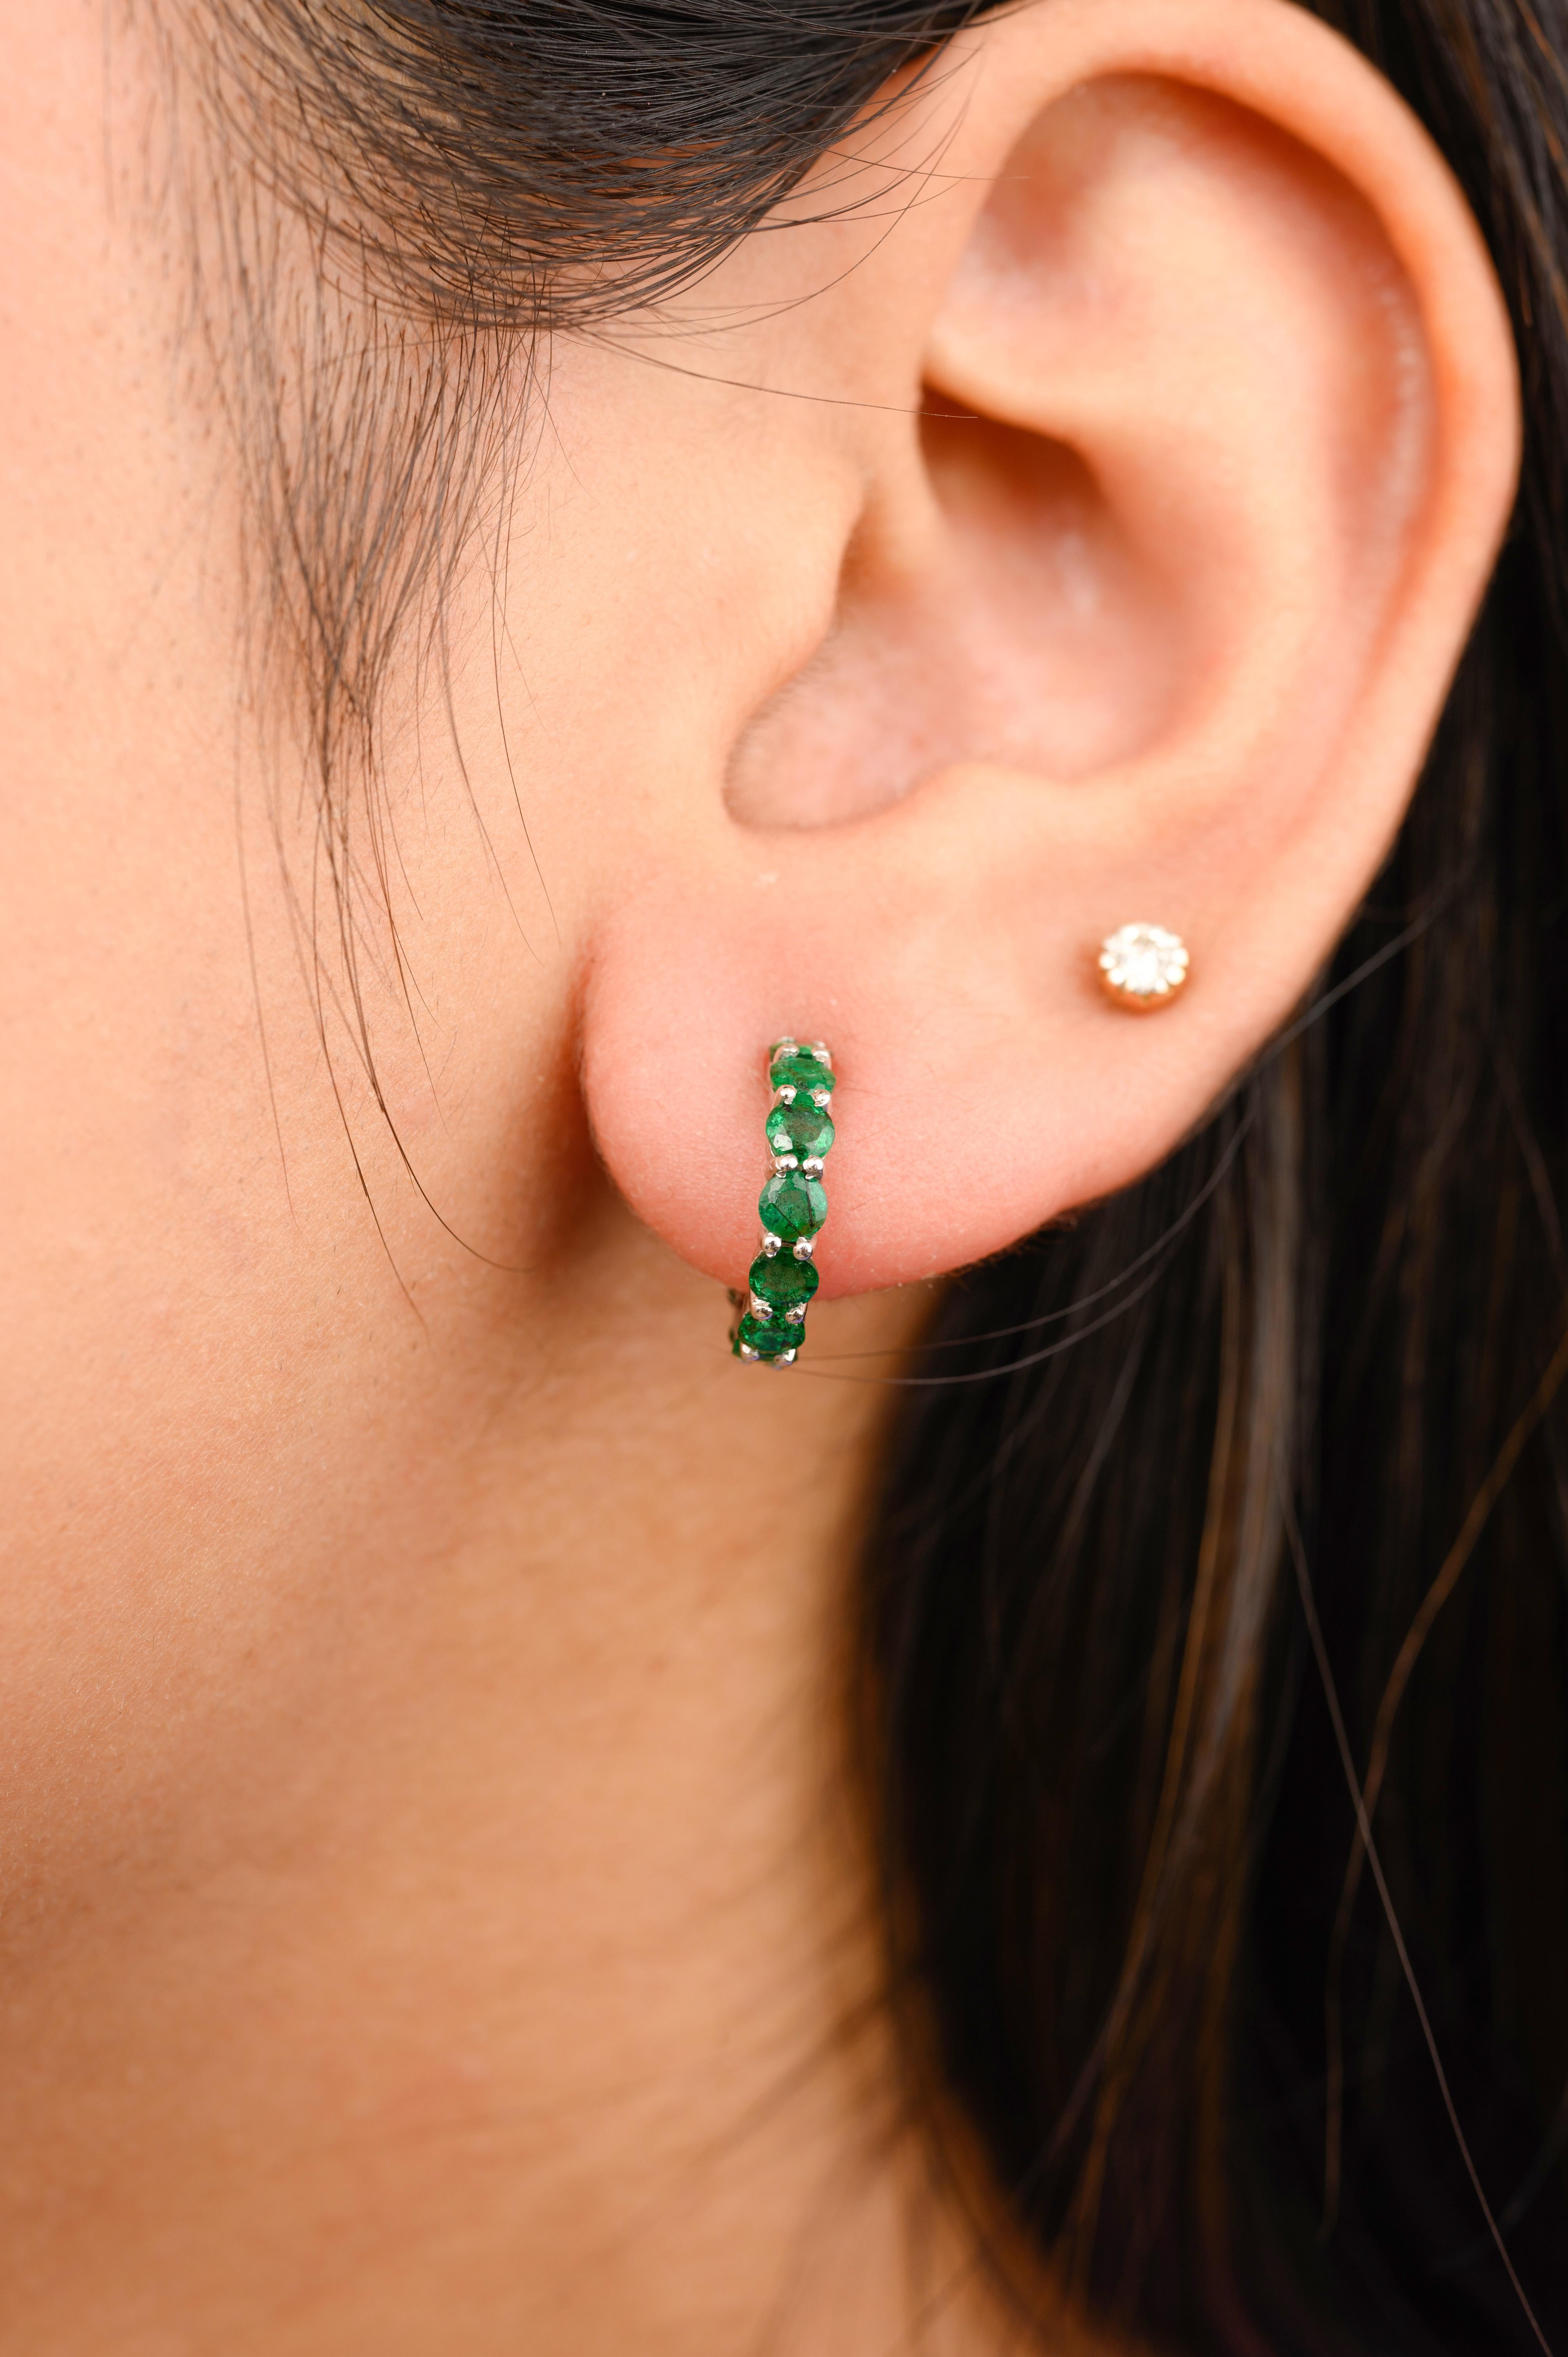 Tiefgrüner Smaragd Geburtsstein Tiny Hoop Earrings in 18K Gold, um eine Aussage mit Ihrem Look zu machen. Sie brauchen Ohrstecker, um mit Ihrem Look ein Statement zu setzen. Diese Ohrringe mit rundgeschliffenem Smaragd sorgen für einen funkelnden,